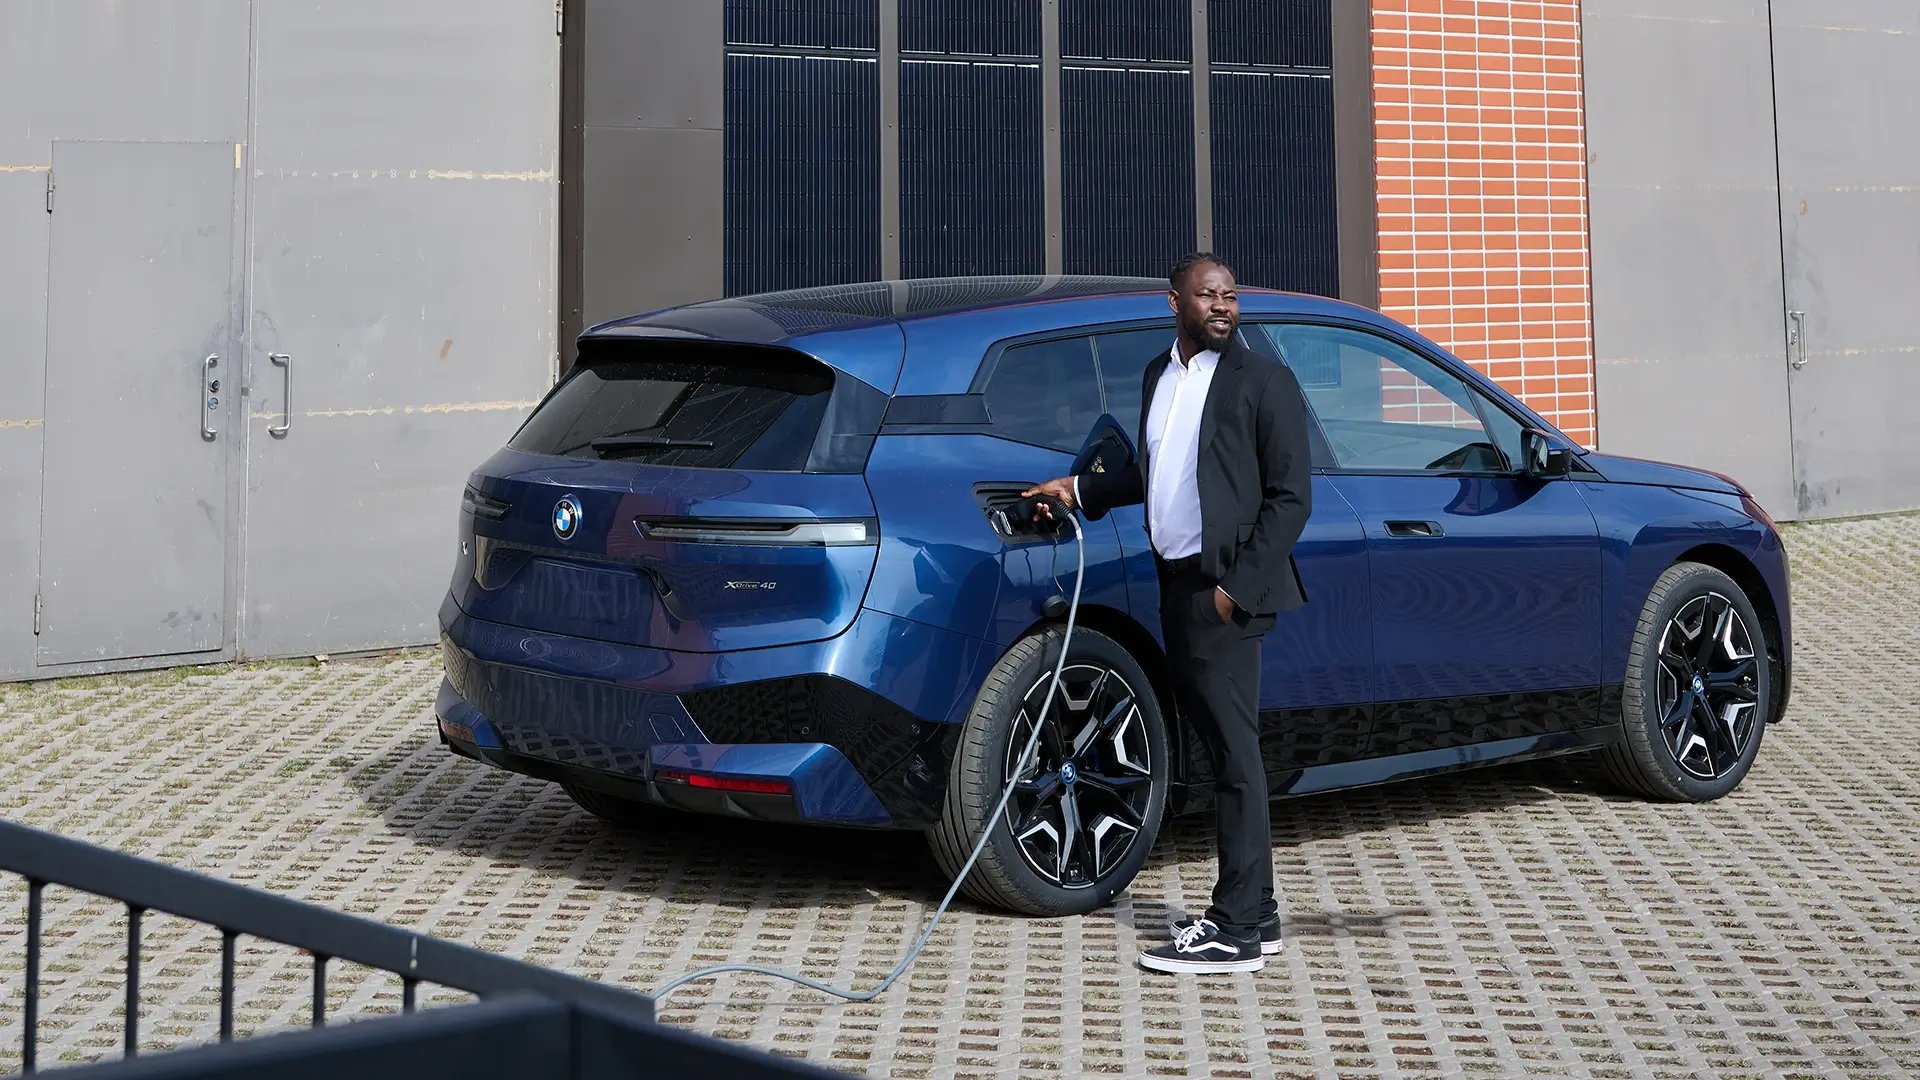 Mann hält Ladekabel in der Hand und lädt blaues SUV E-Auto im urbanen Gebiet